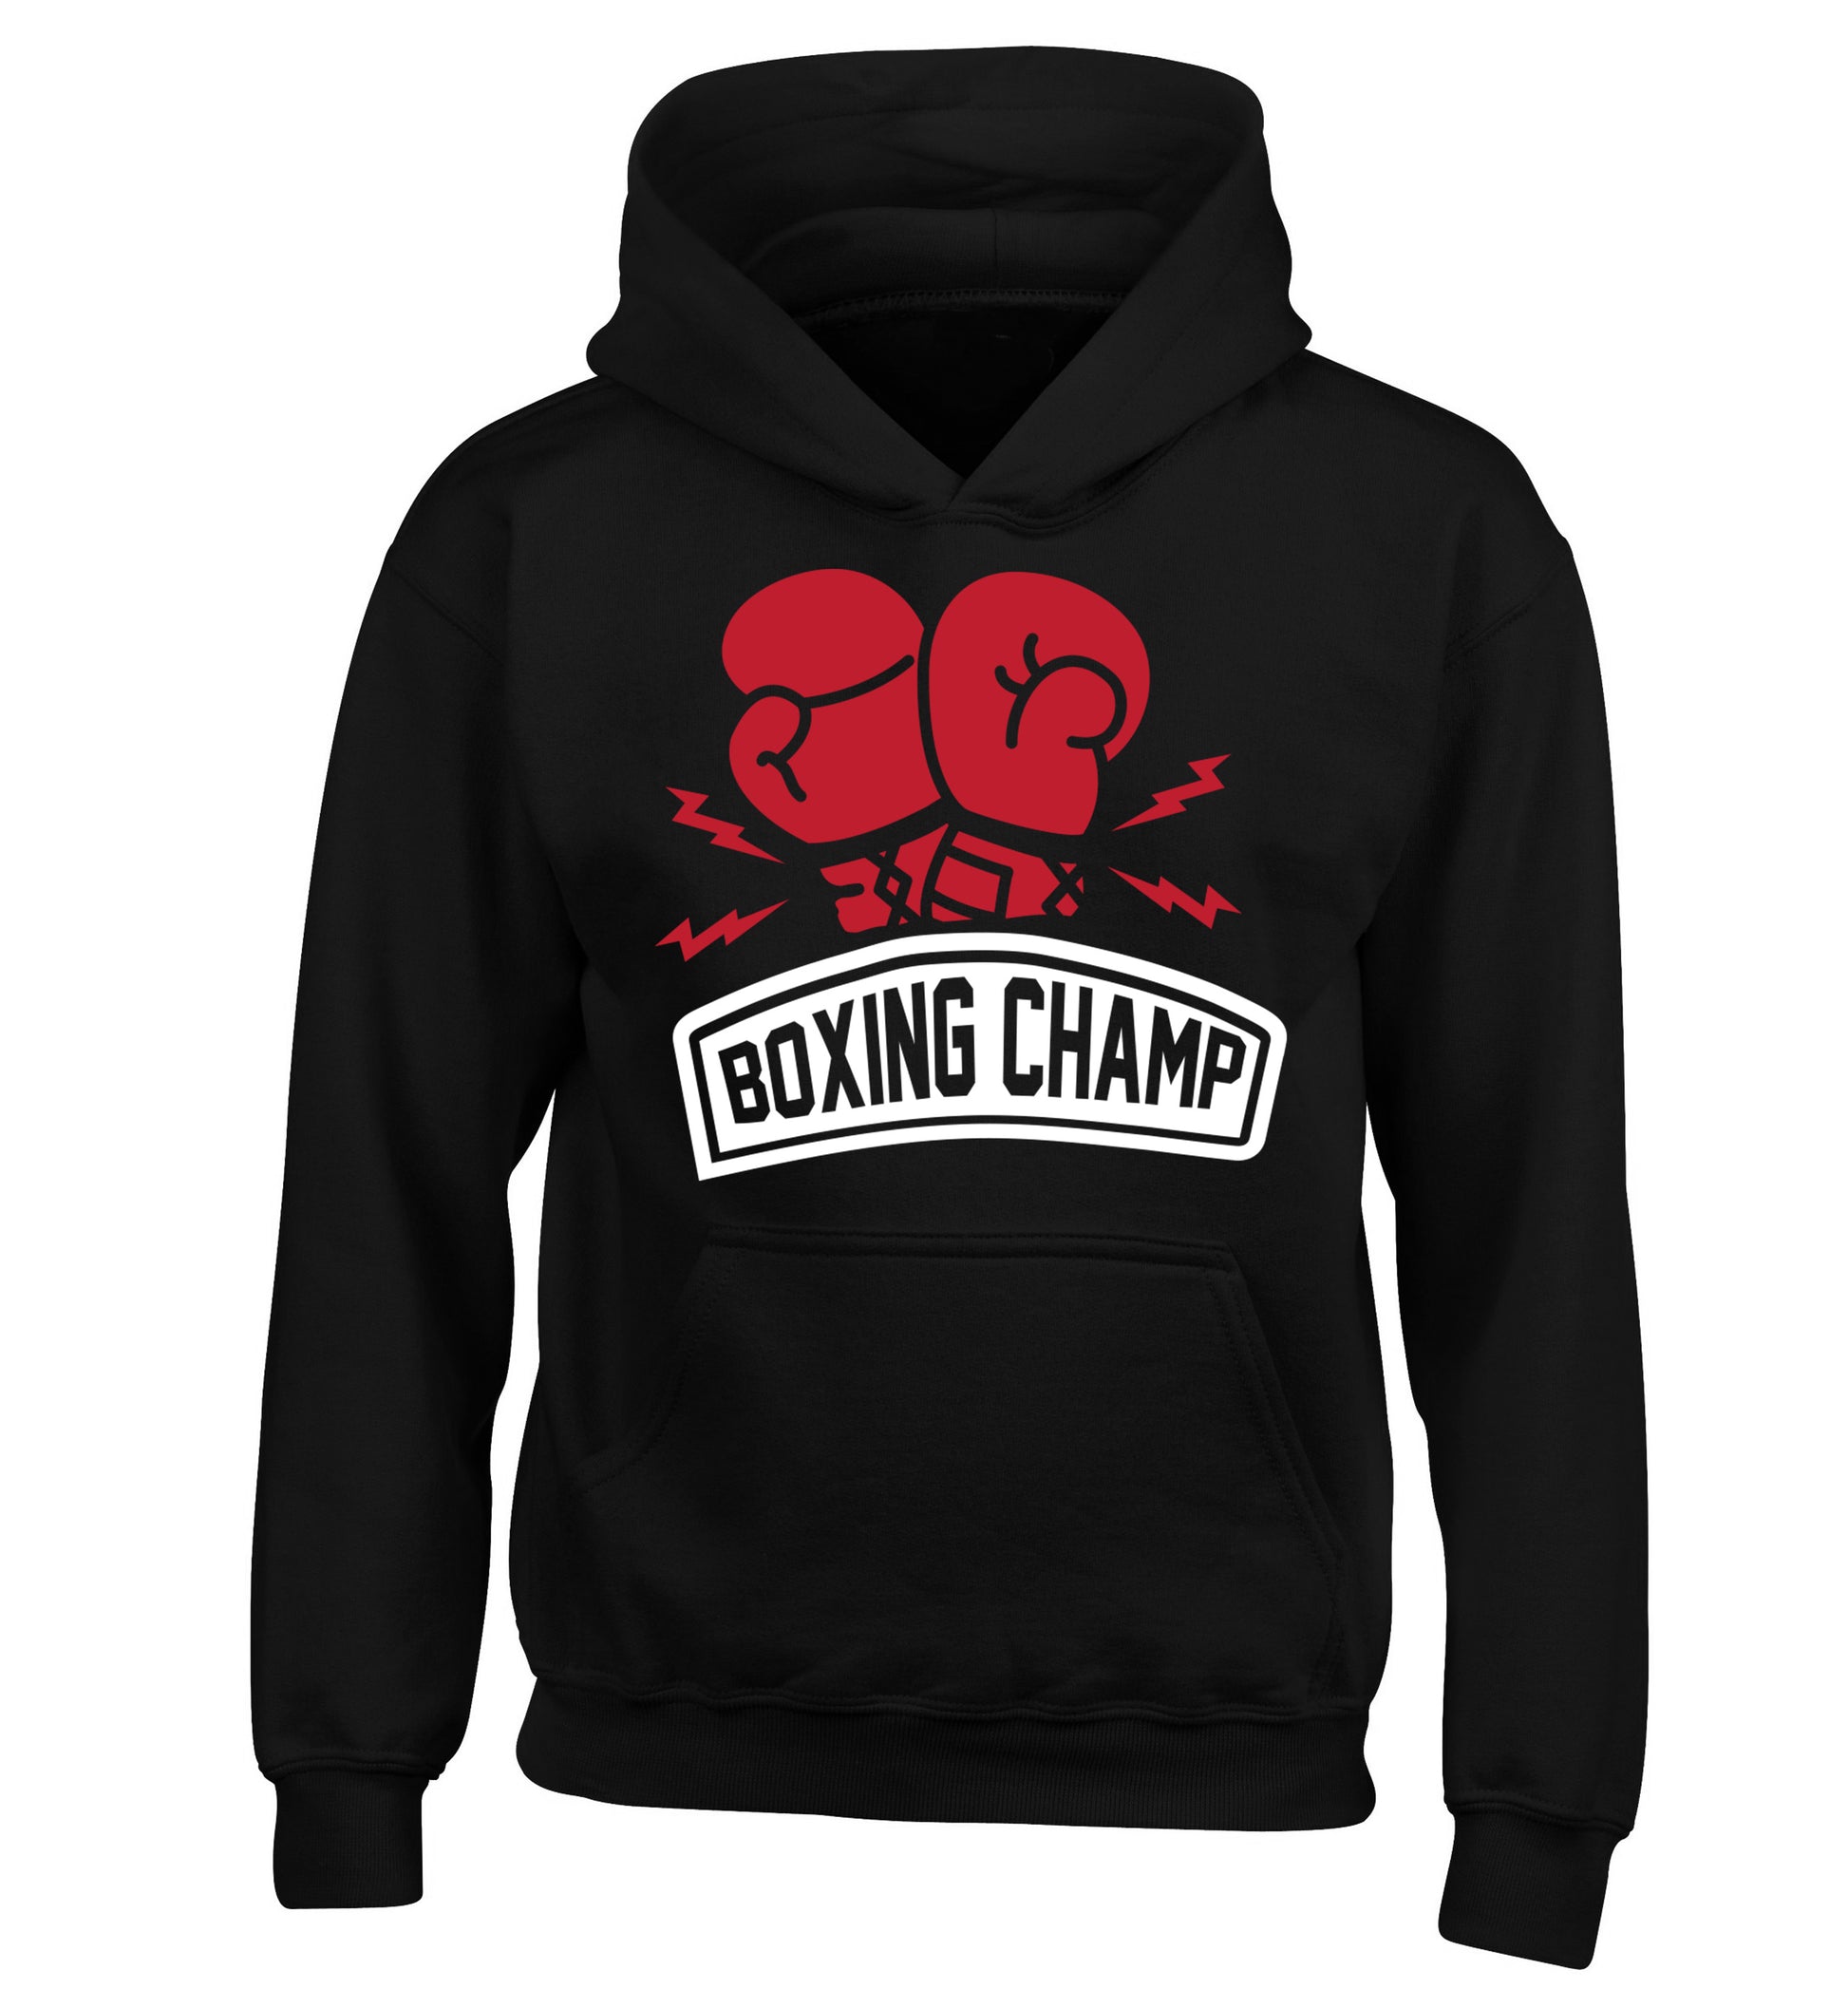 Boxing Champ children's black hoodie 12-13 Years